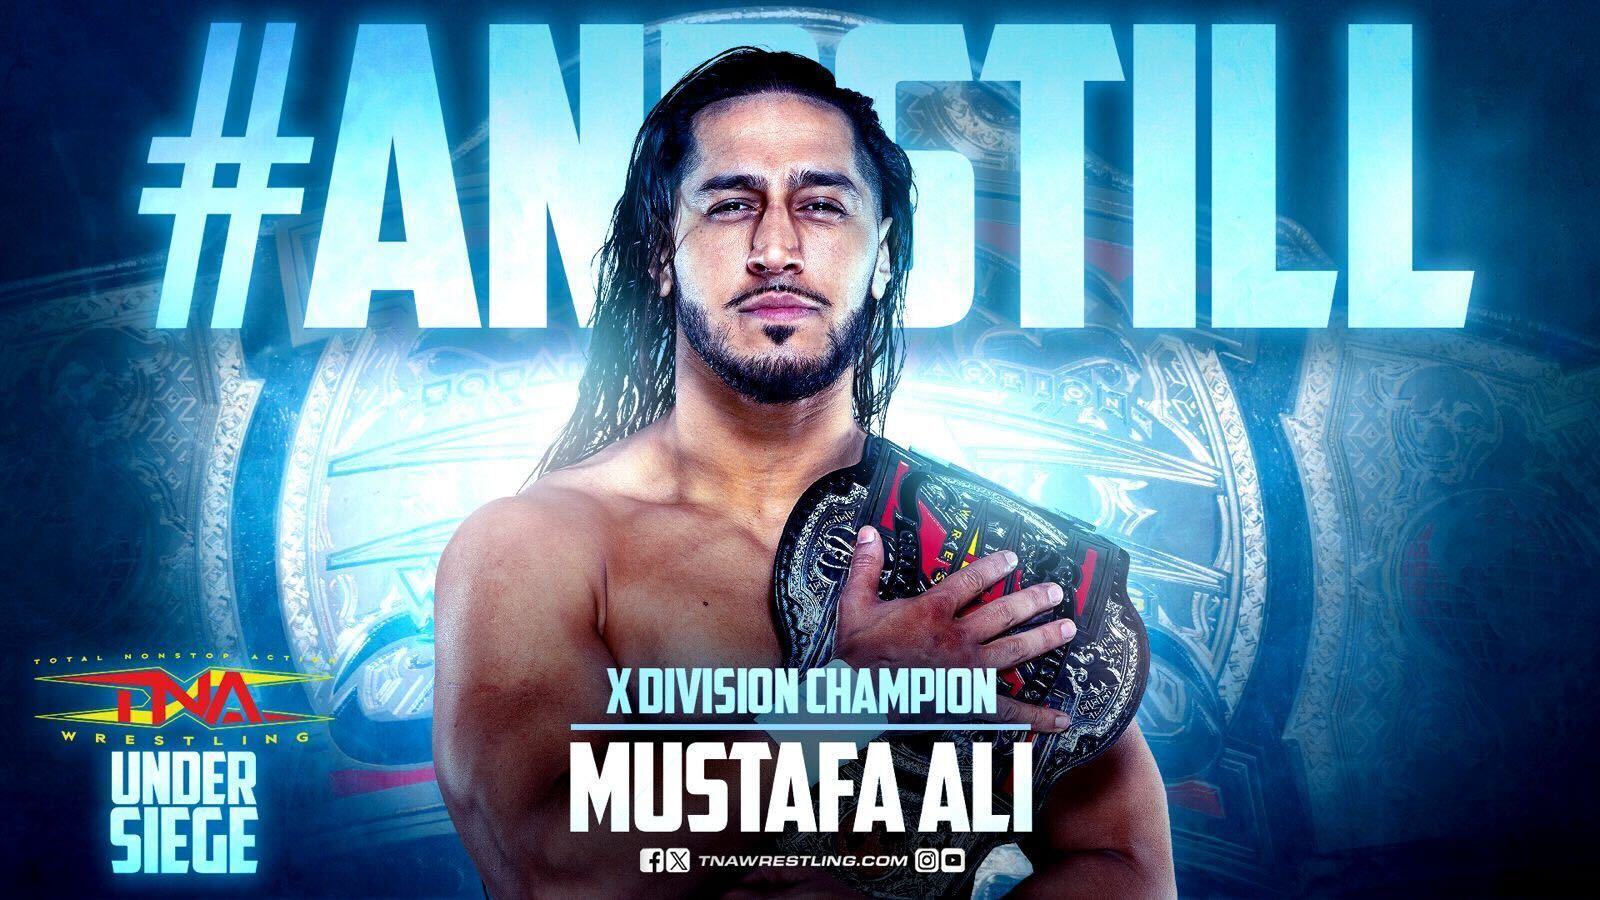 TNA Mustafa